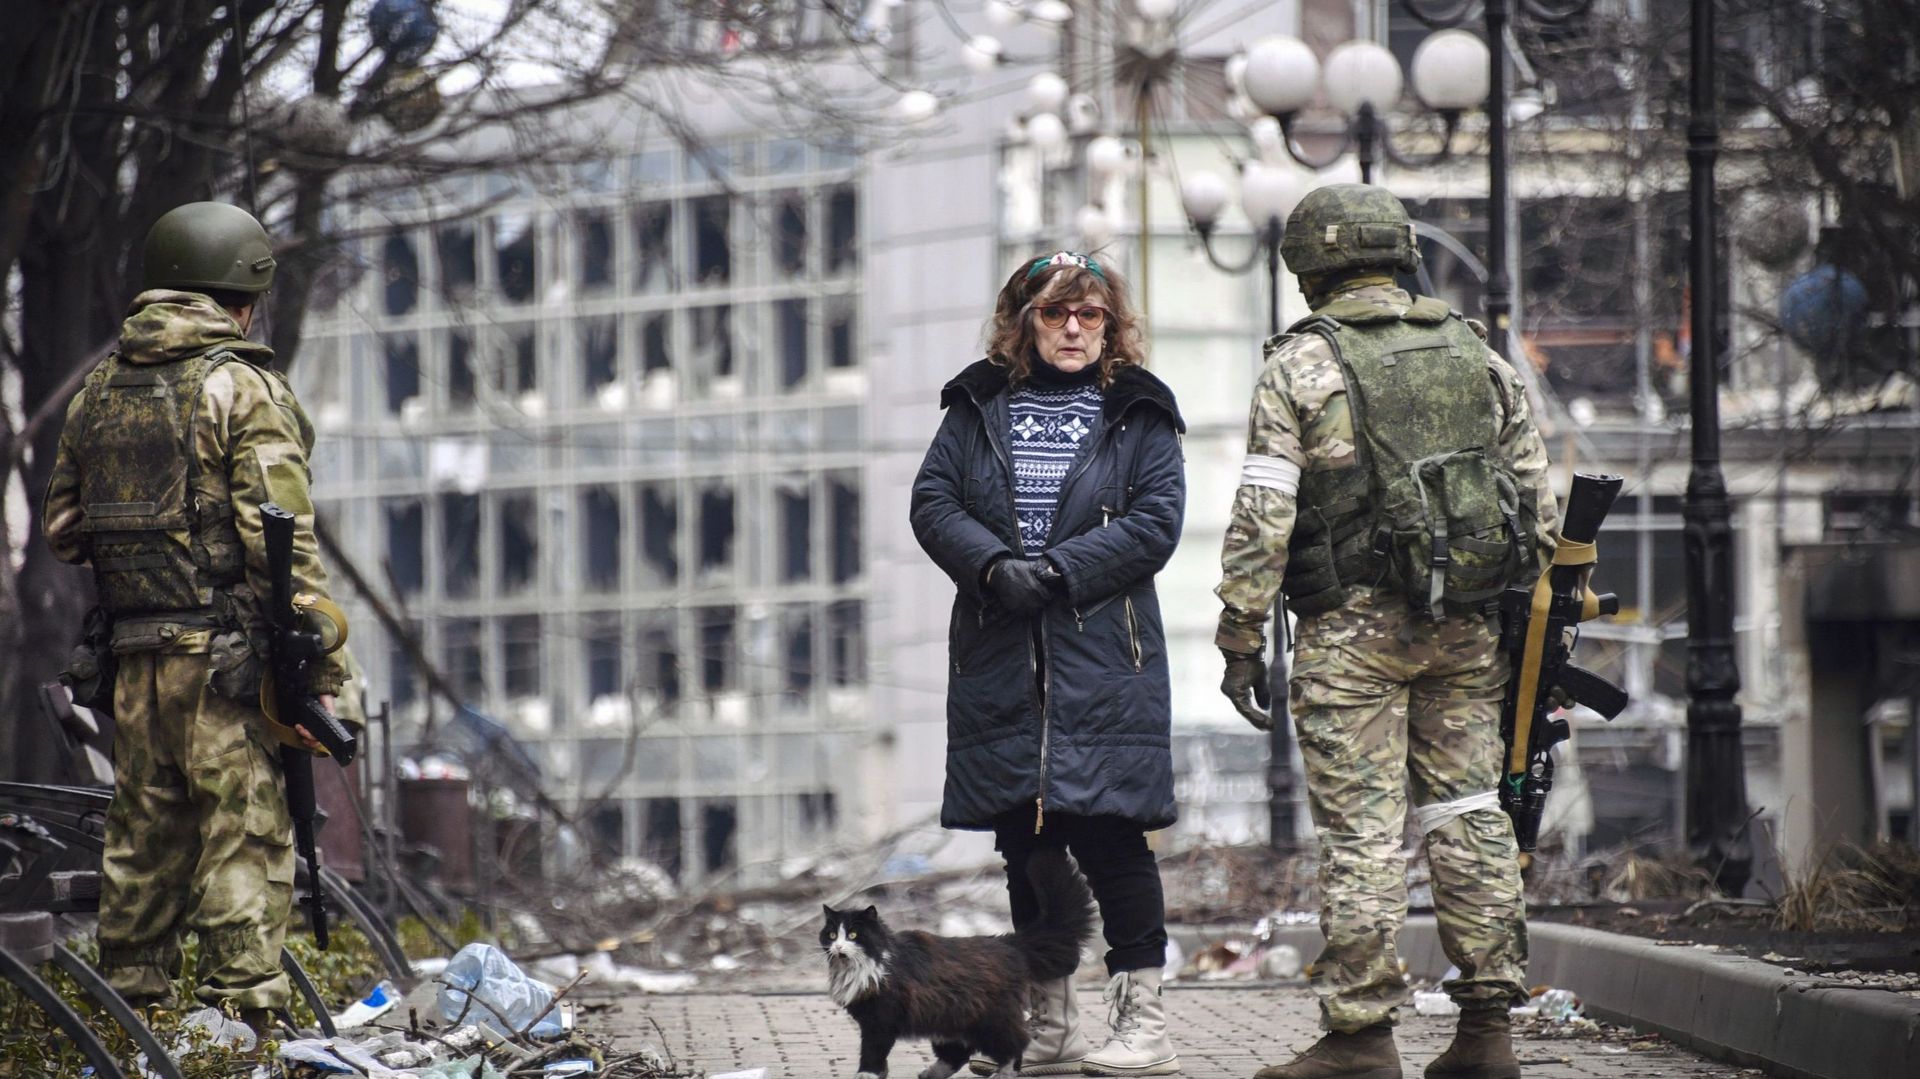 Femme discutant avec des soldats russes à Marioupol, le 12 avril 2022 (illustration)